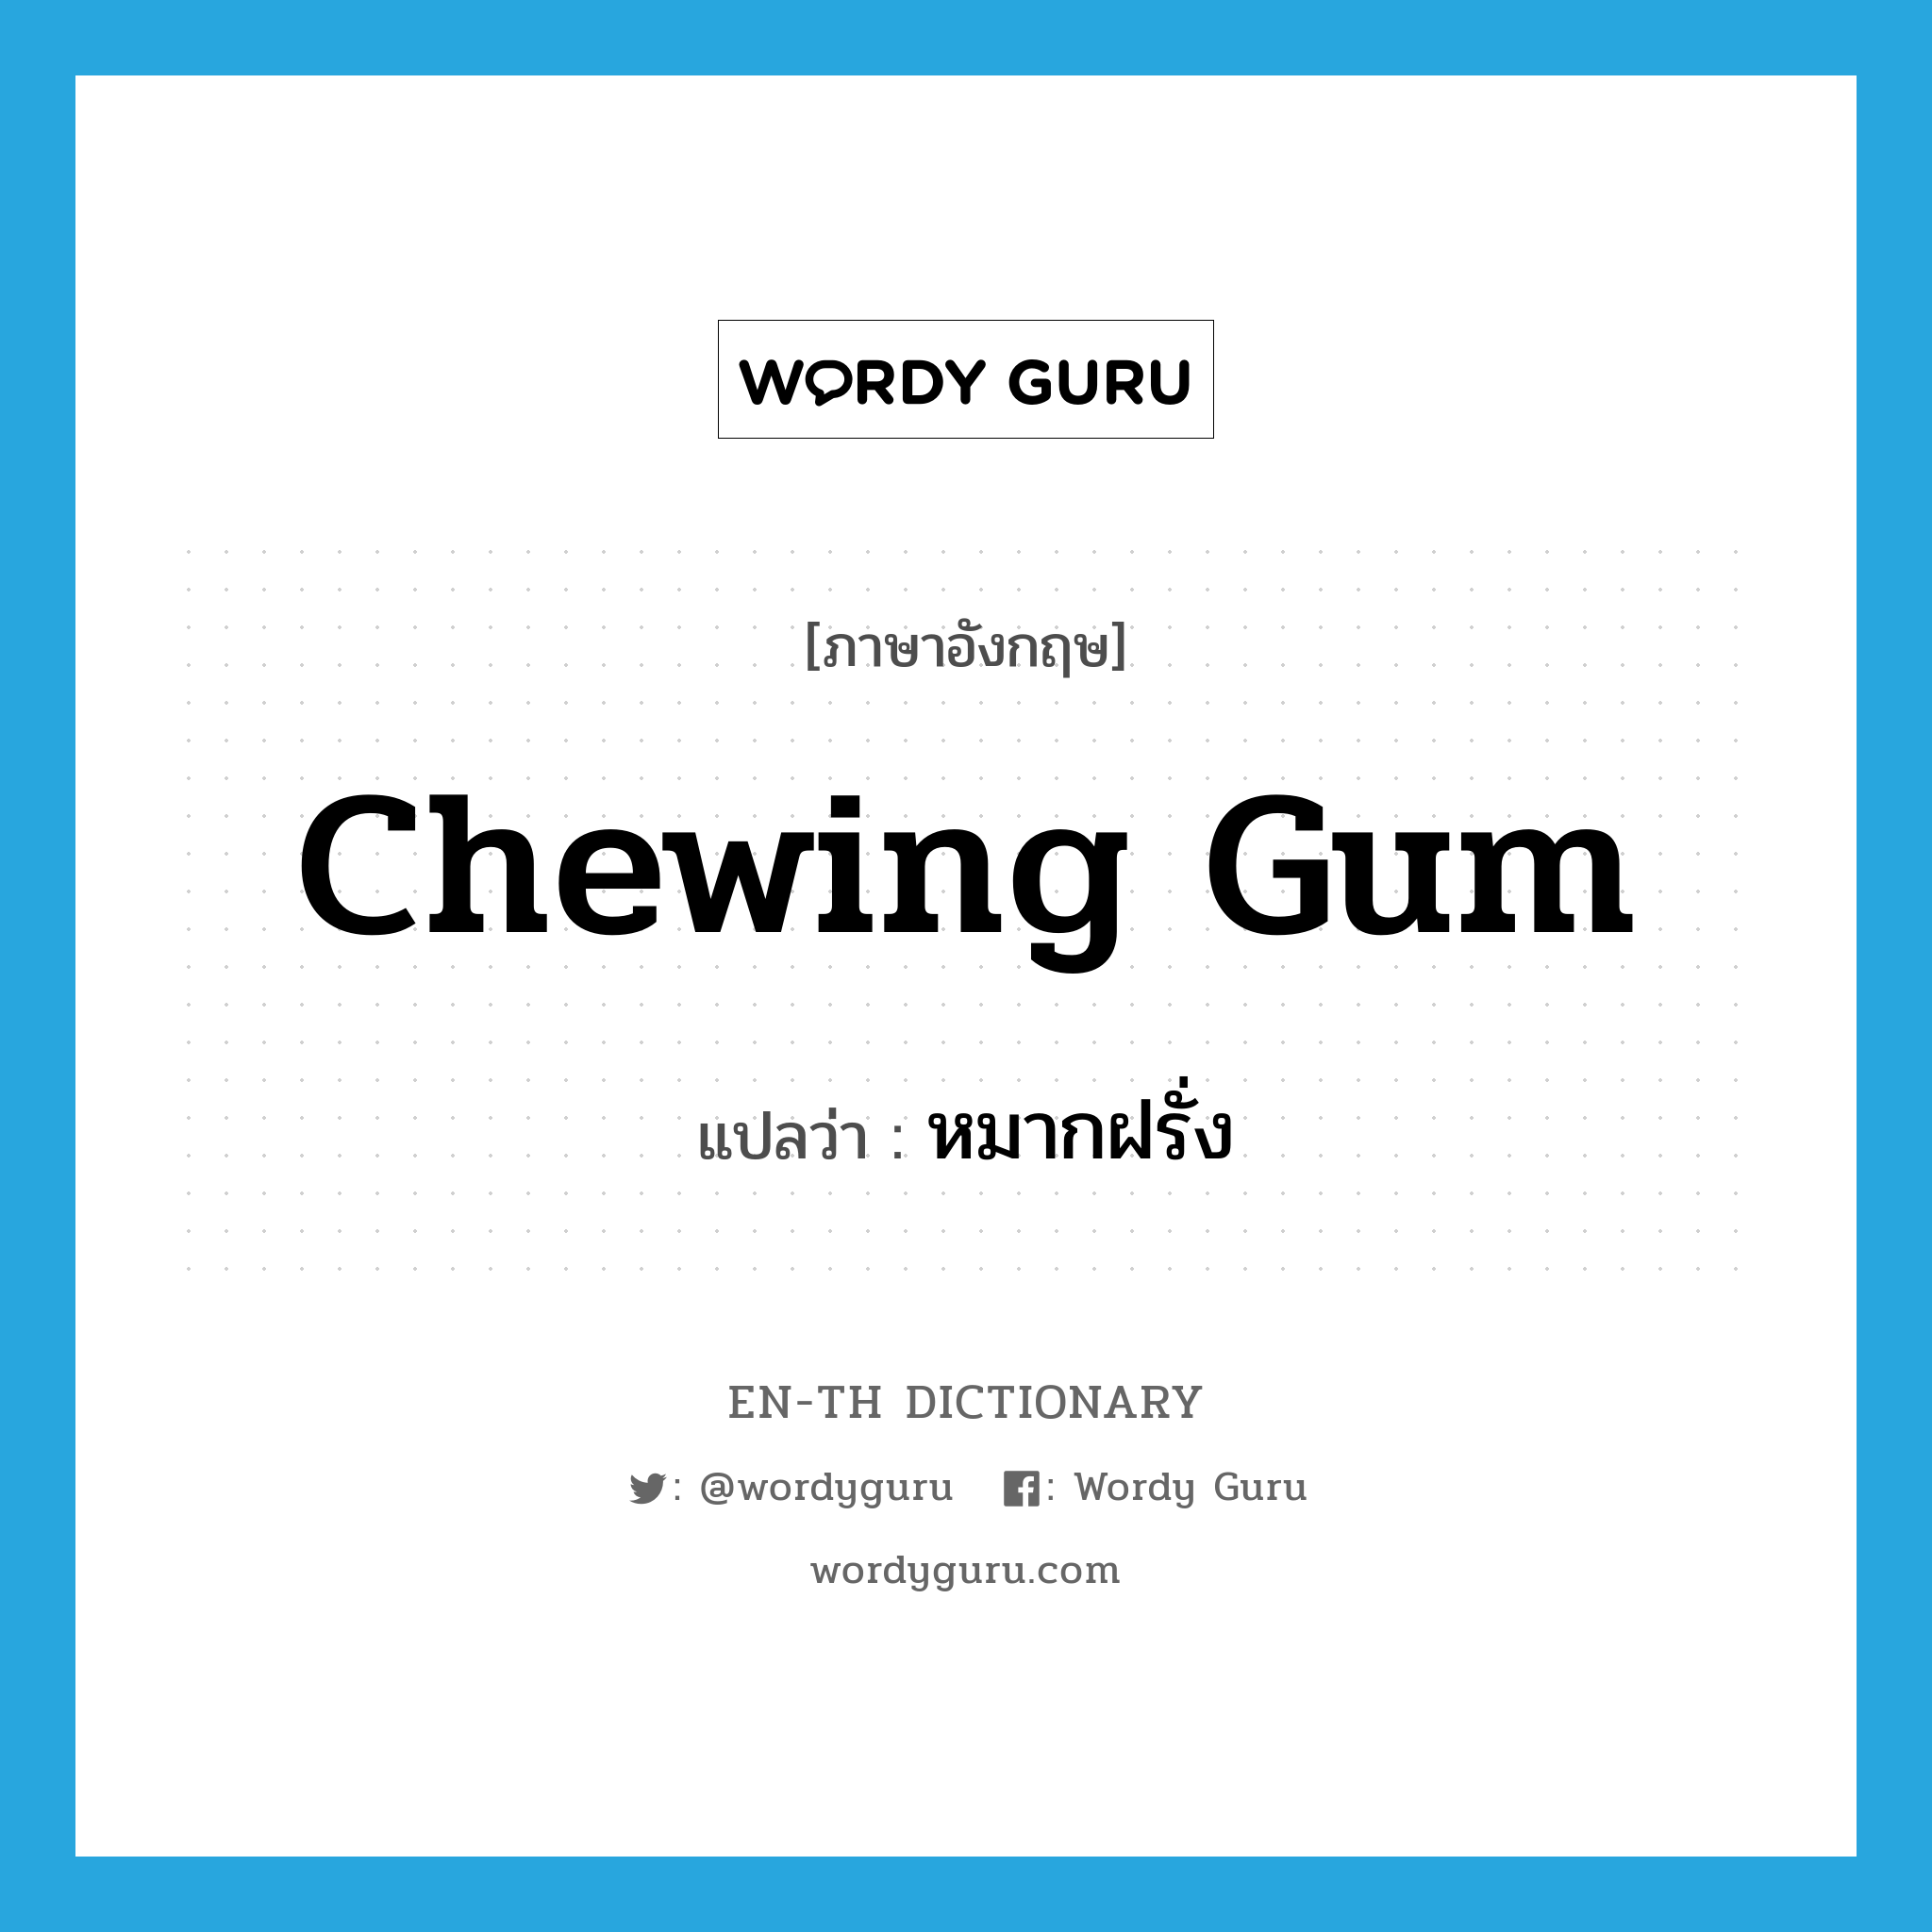 หมากฝรั่ง ภาษาอังกฤษ?, คำศัพท์ภาษาอังกฤษ หมากฝรั่ง แปลว่า chewing gum ประเภท N หมวด N